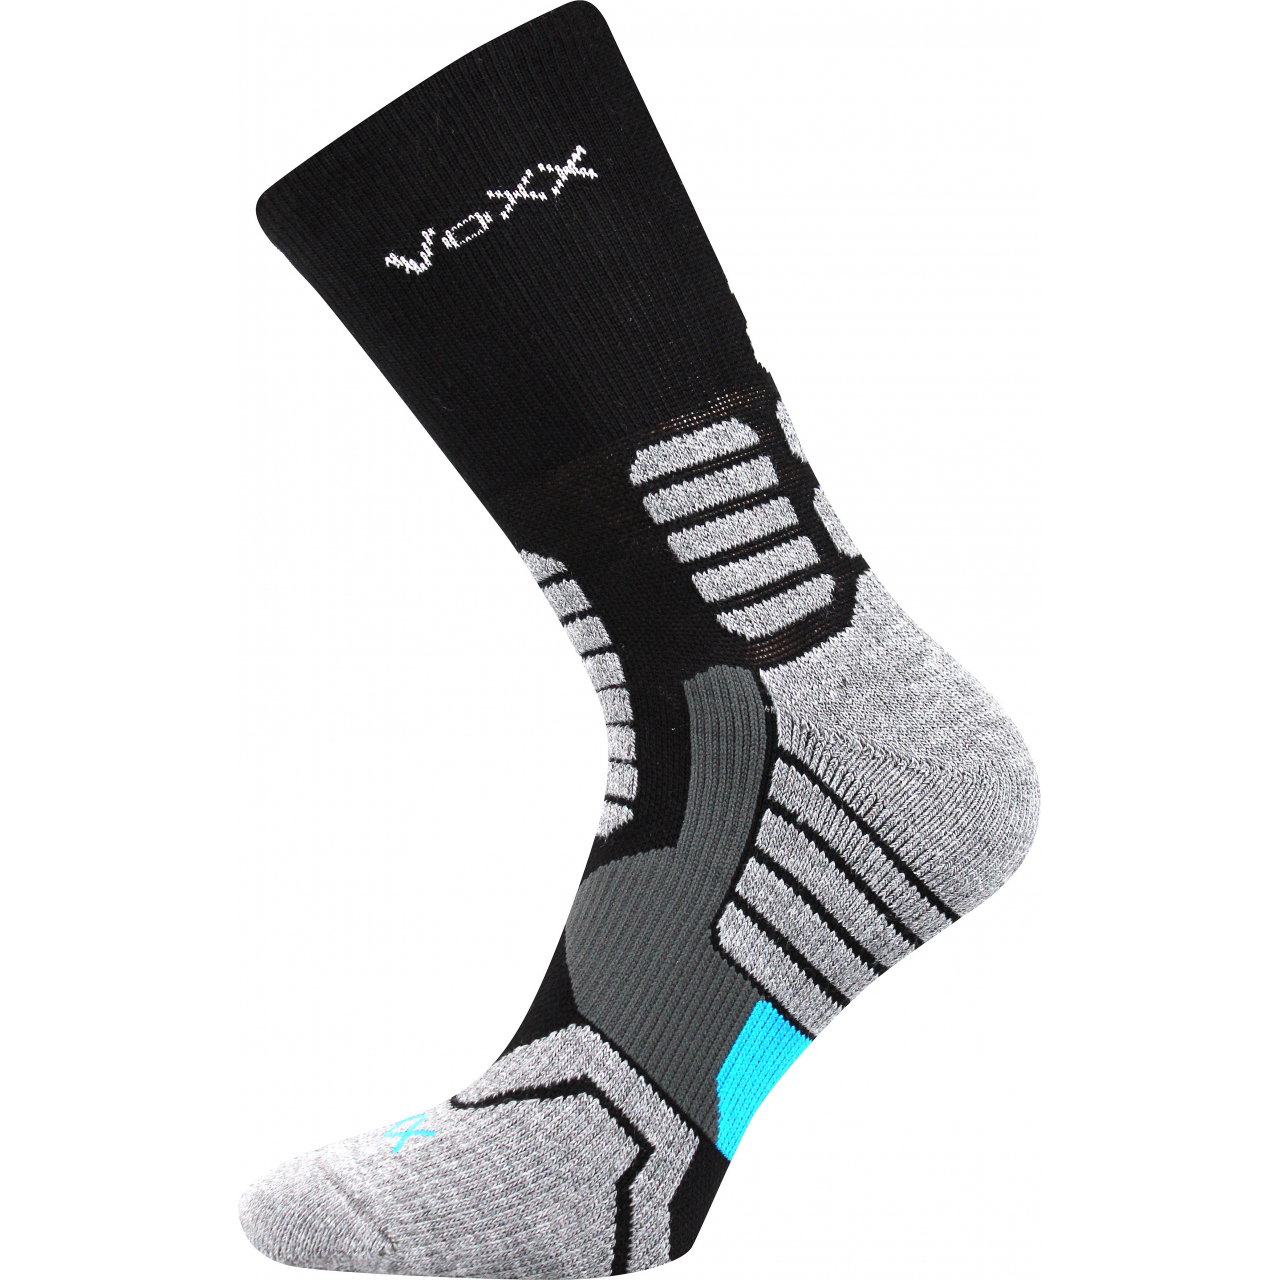 Ponožky kompresní unisex Voxx Ronin - černé-šedé, 35-38